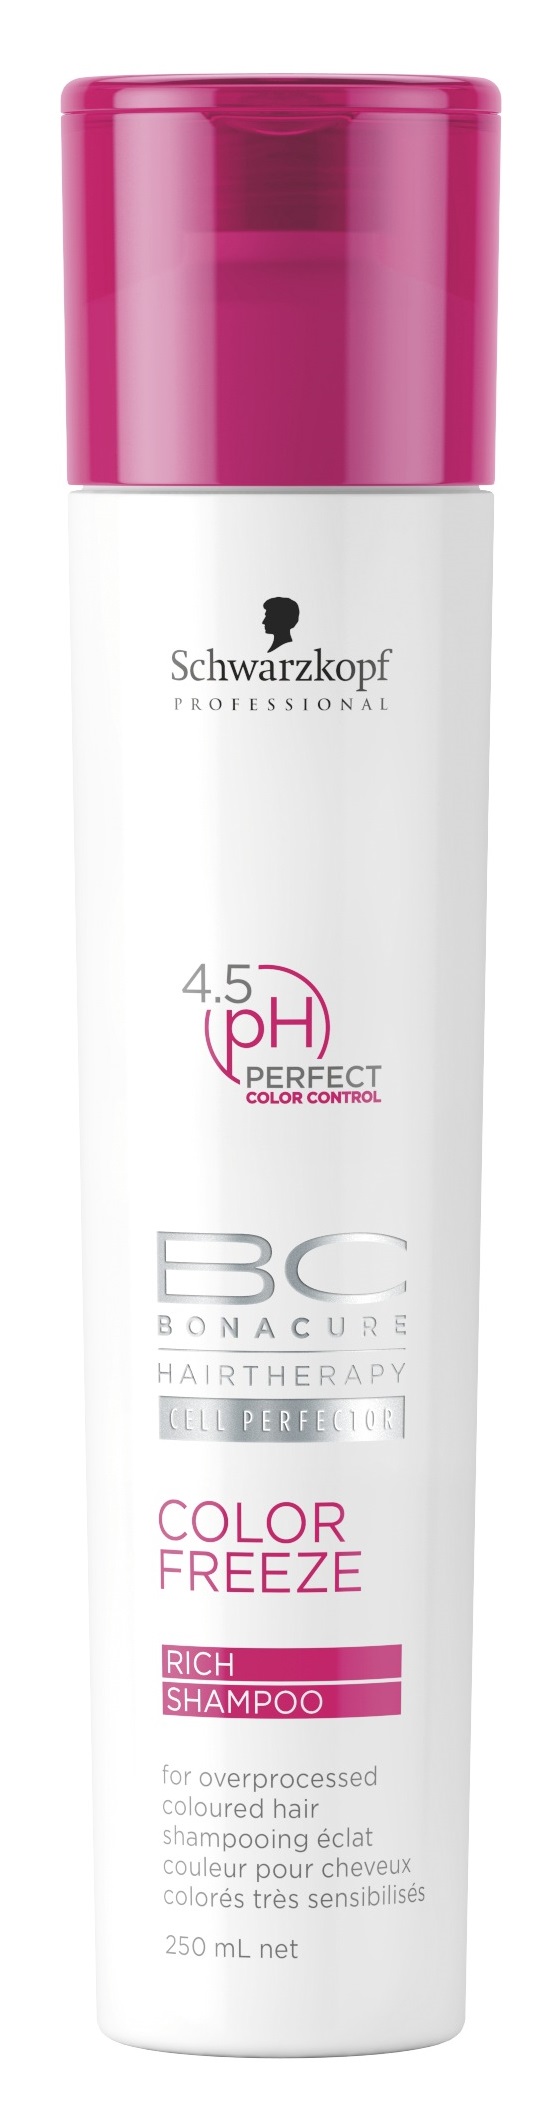 Schwarzkopf Bonacure Color Freeze Rich Shampoo 250ml